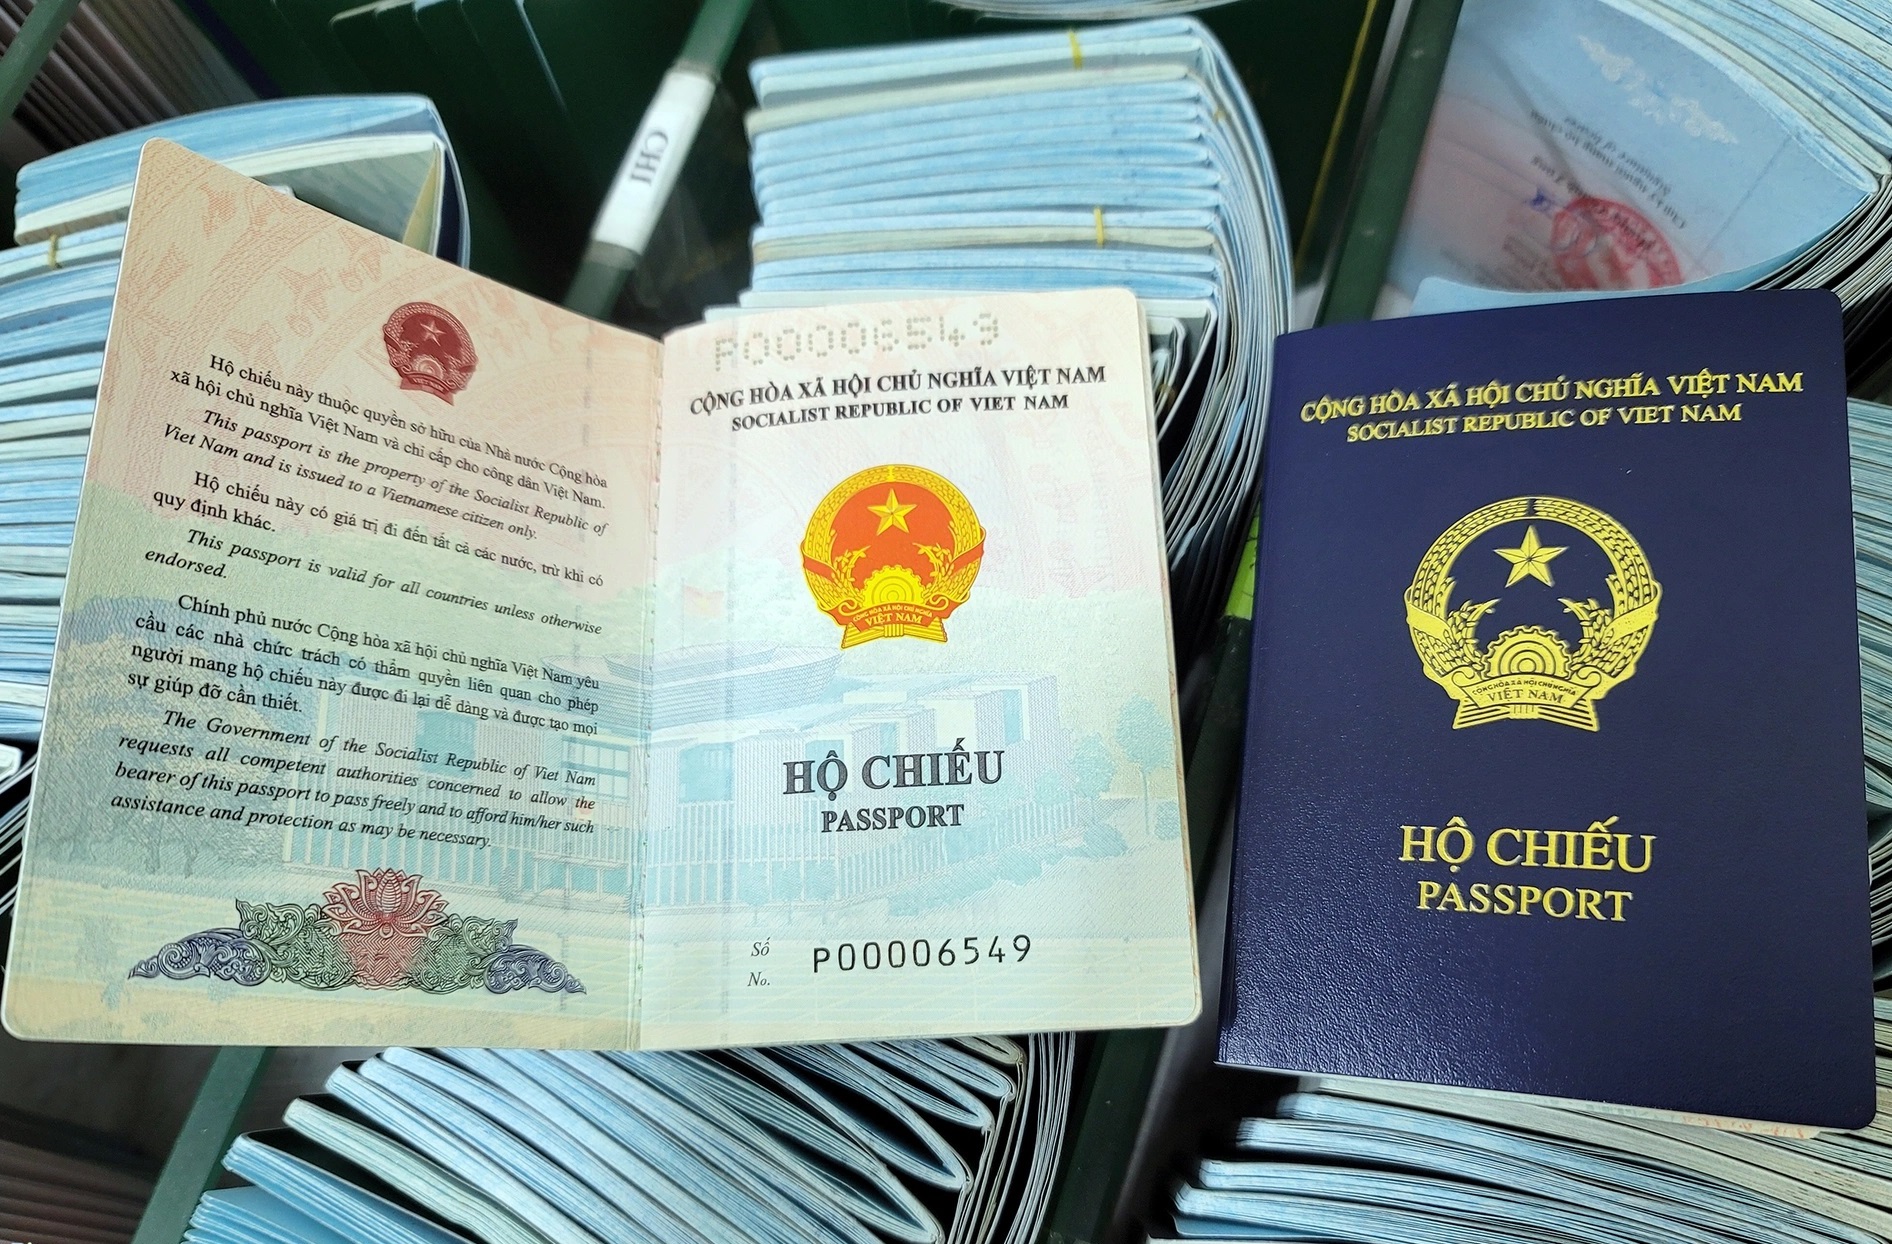 Mỹ khuyến cáo bổ sung thông tin nơi sinh vào mẫu hộ chiếu mới của Việt Nam - Ảnh 1.